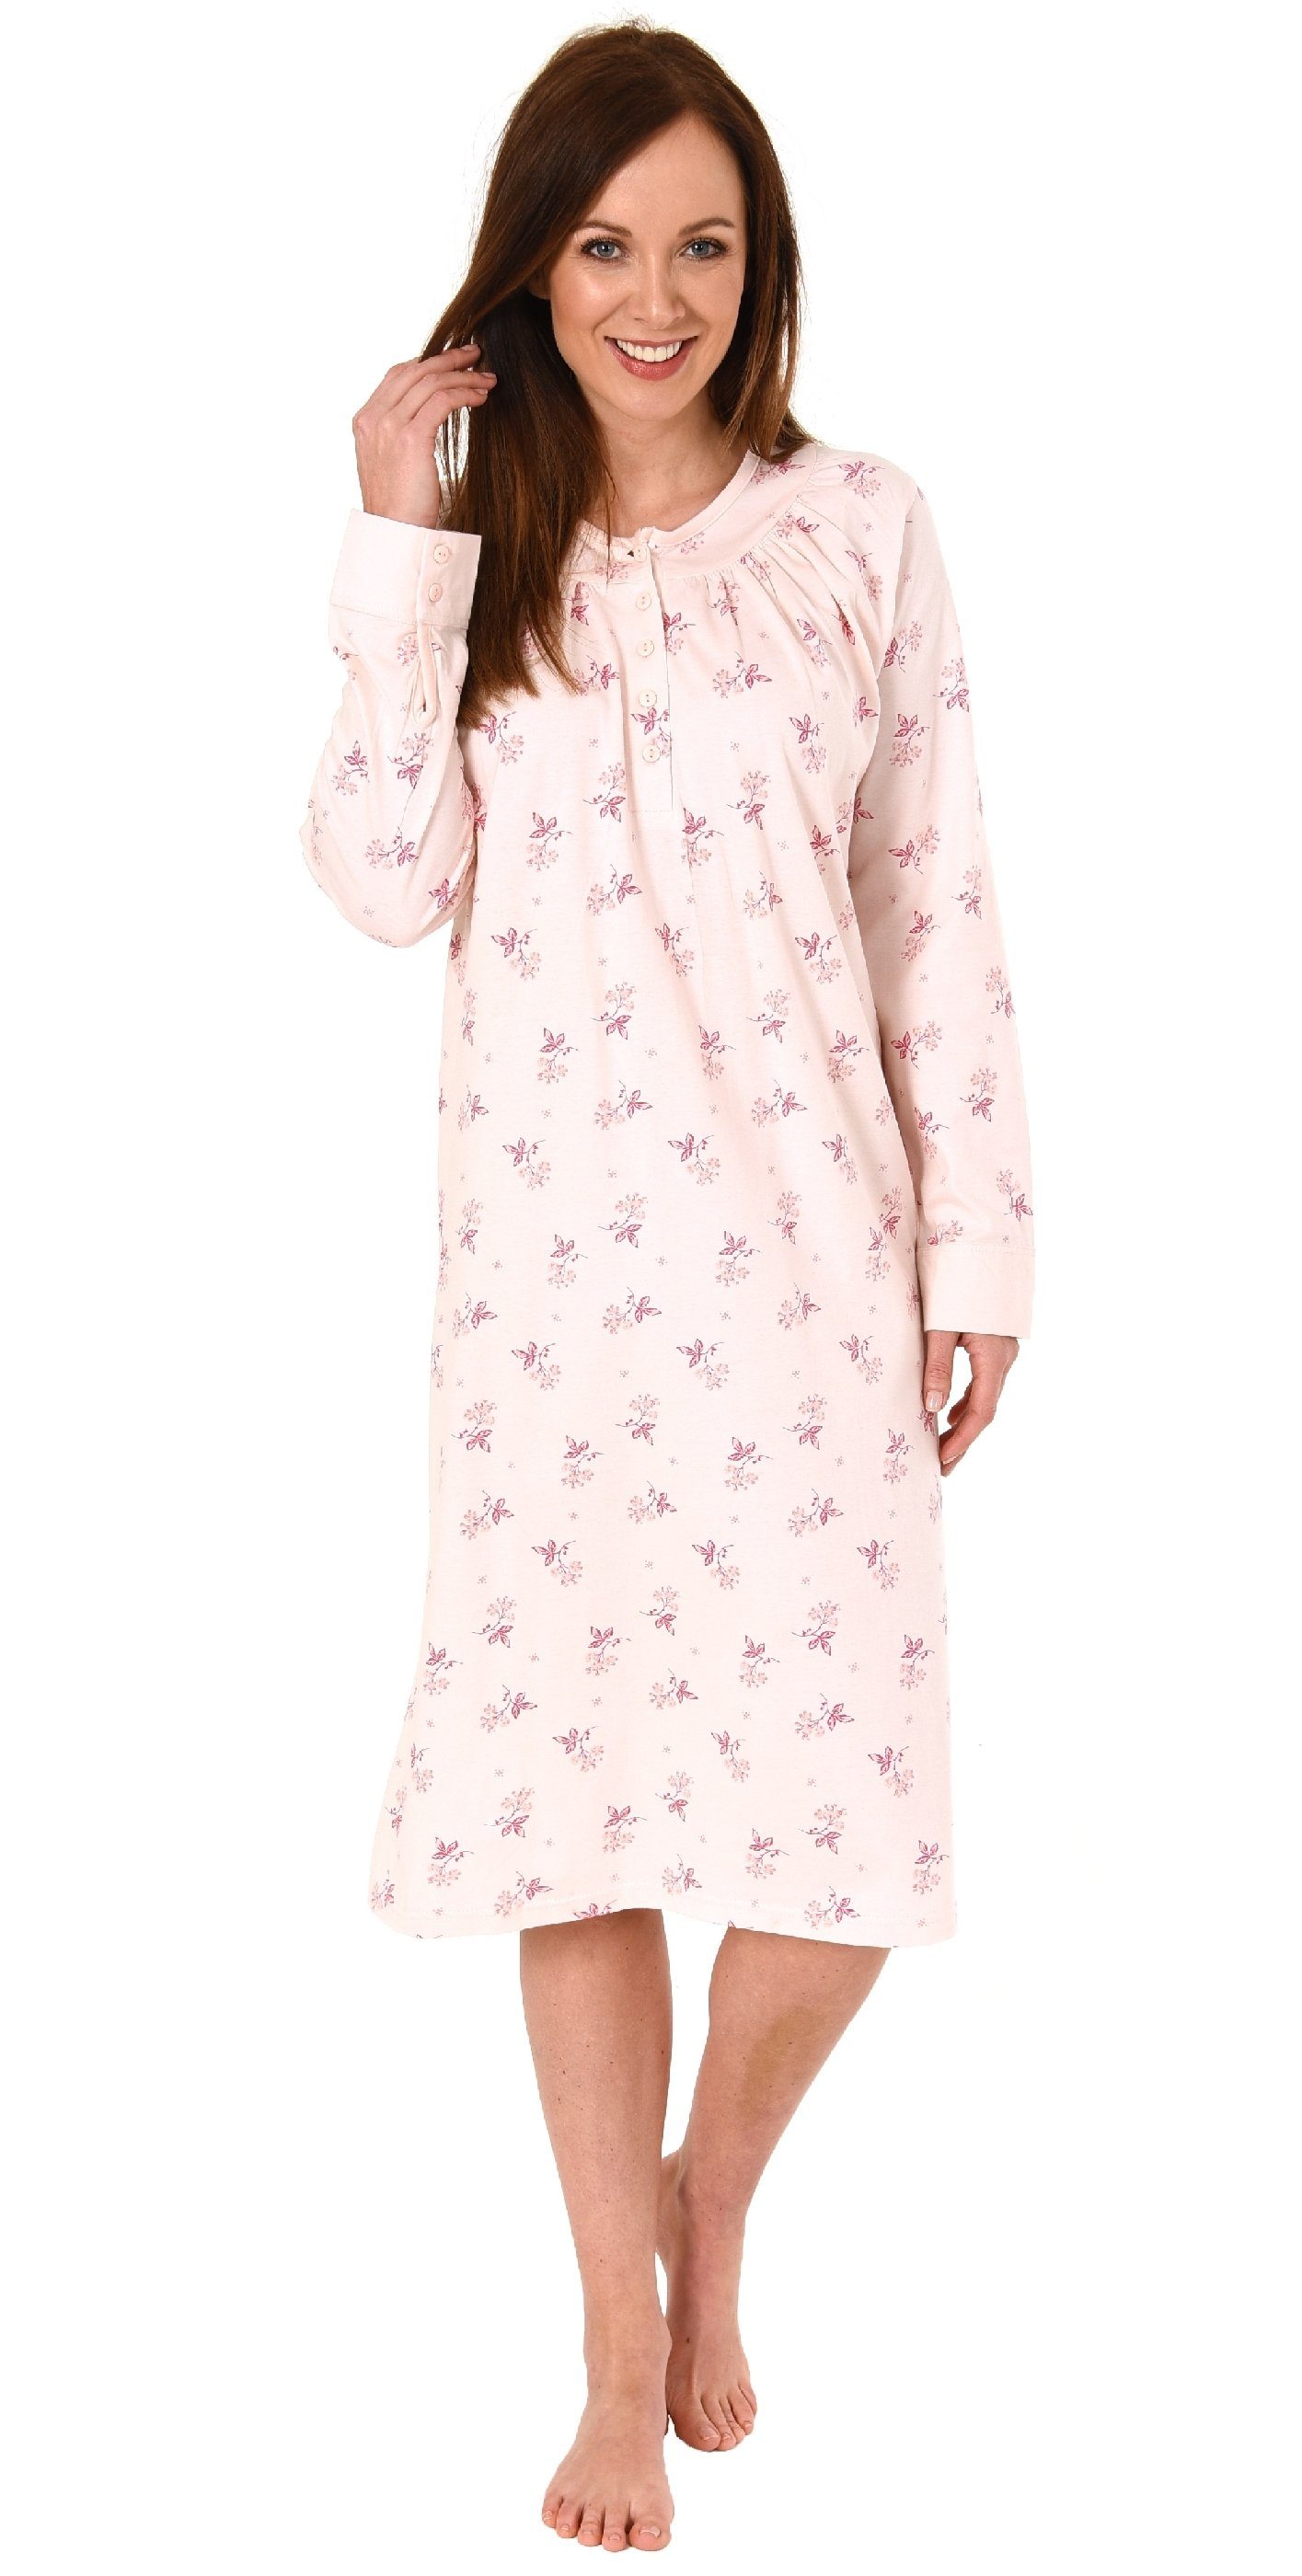 Normann Nachthemd Damen Nachthemd mit cm Länge und Kopfleiste am Hals - 291 190 rosa | Nachthemden